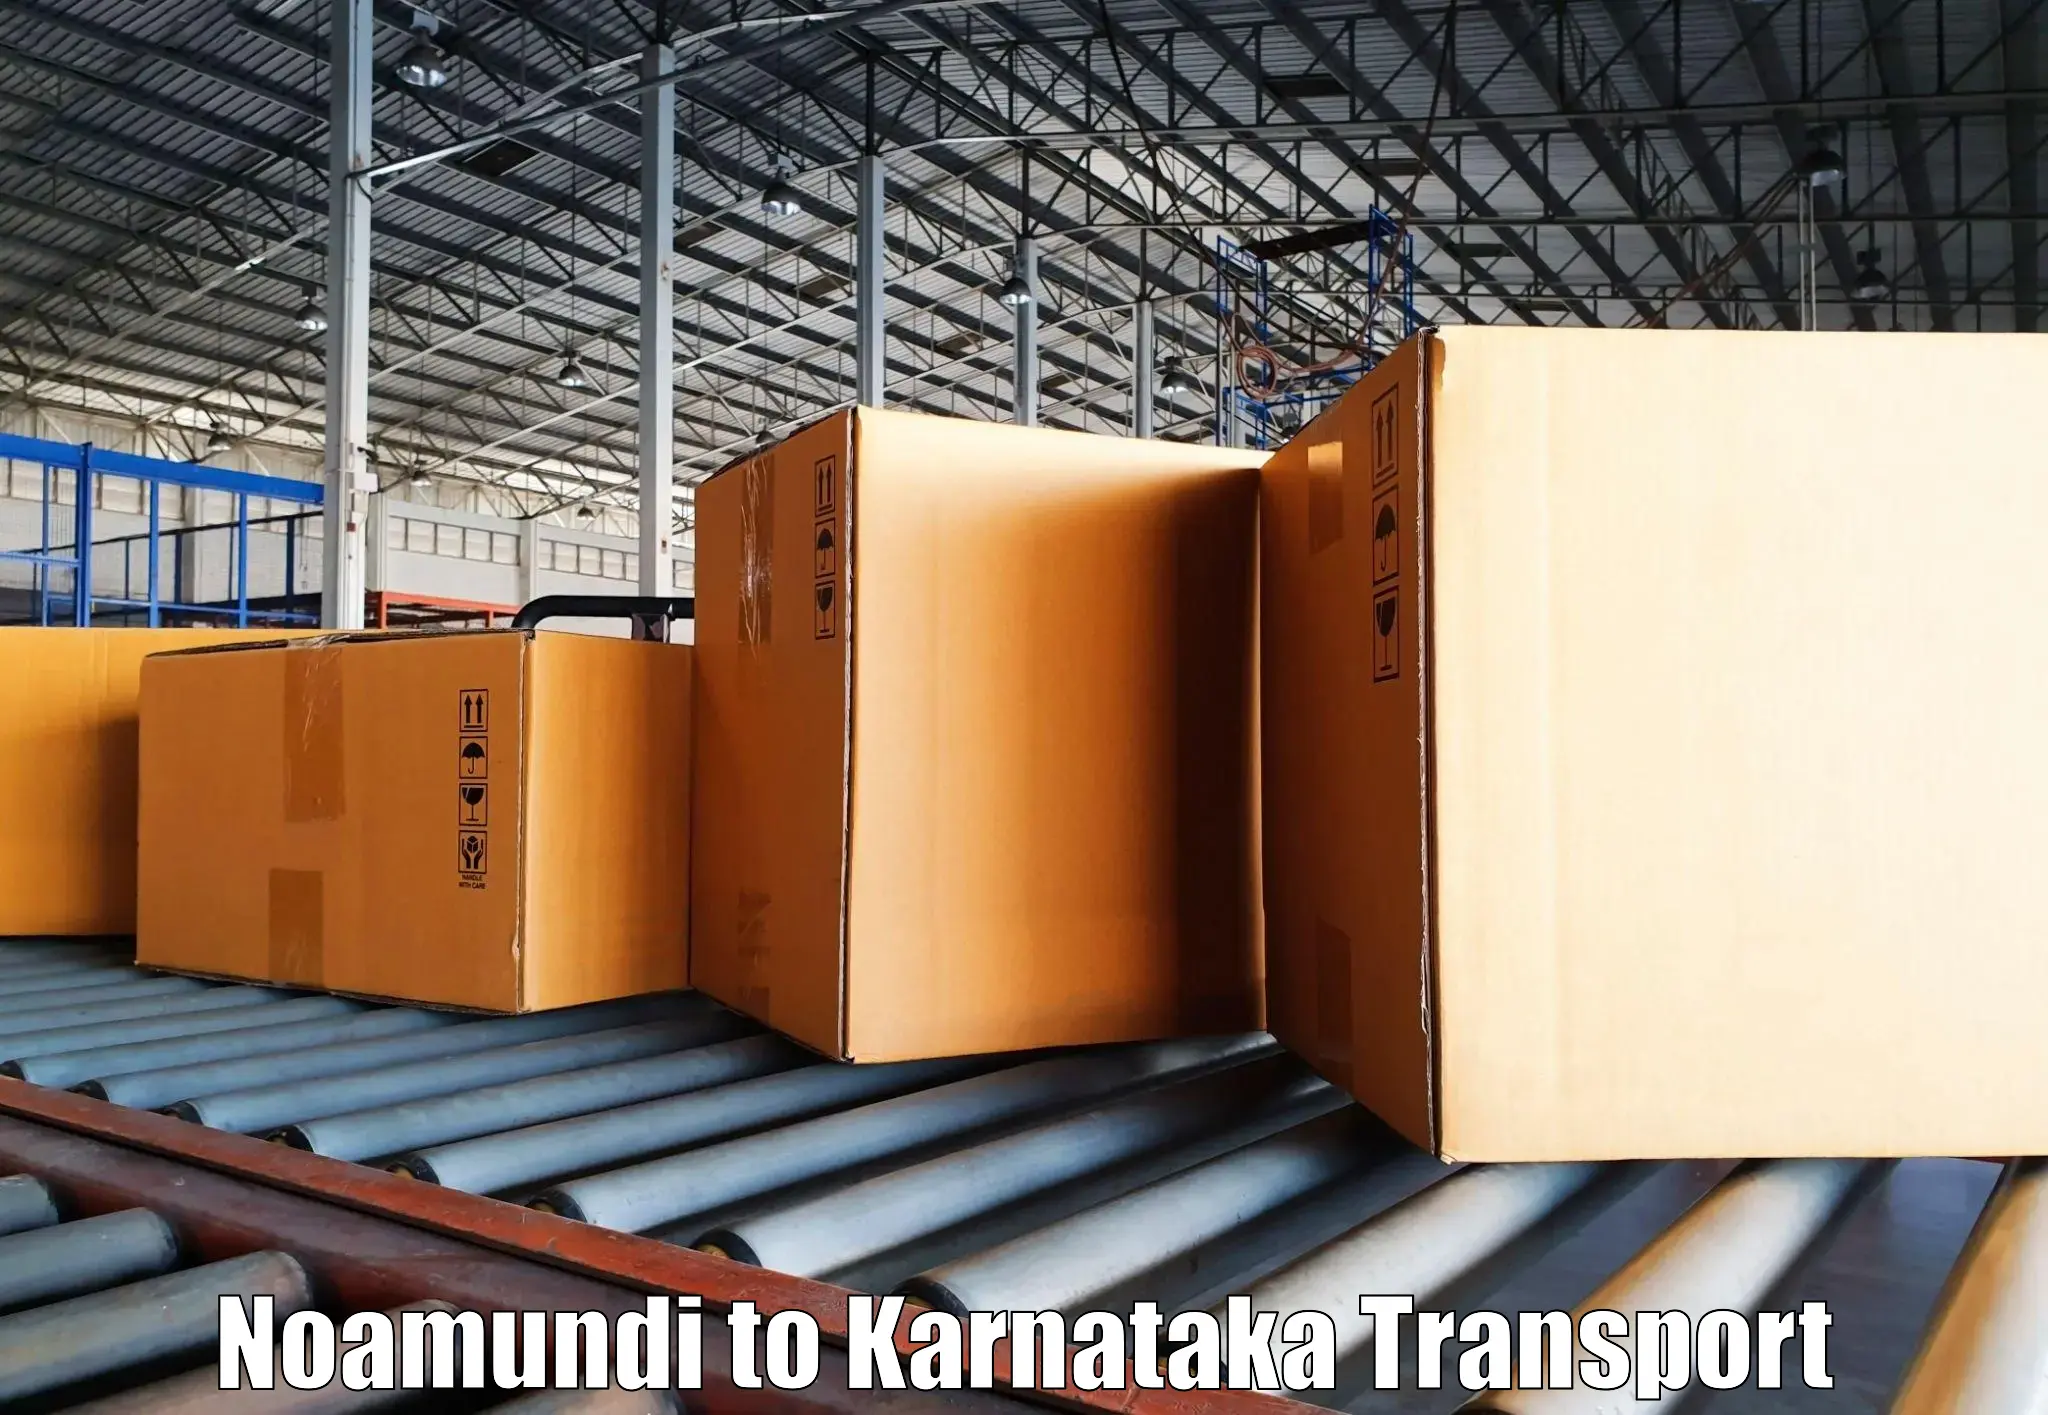 India truck logistics services Noamundi to Karnataka